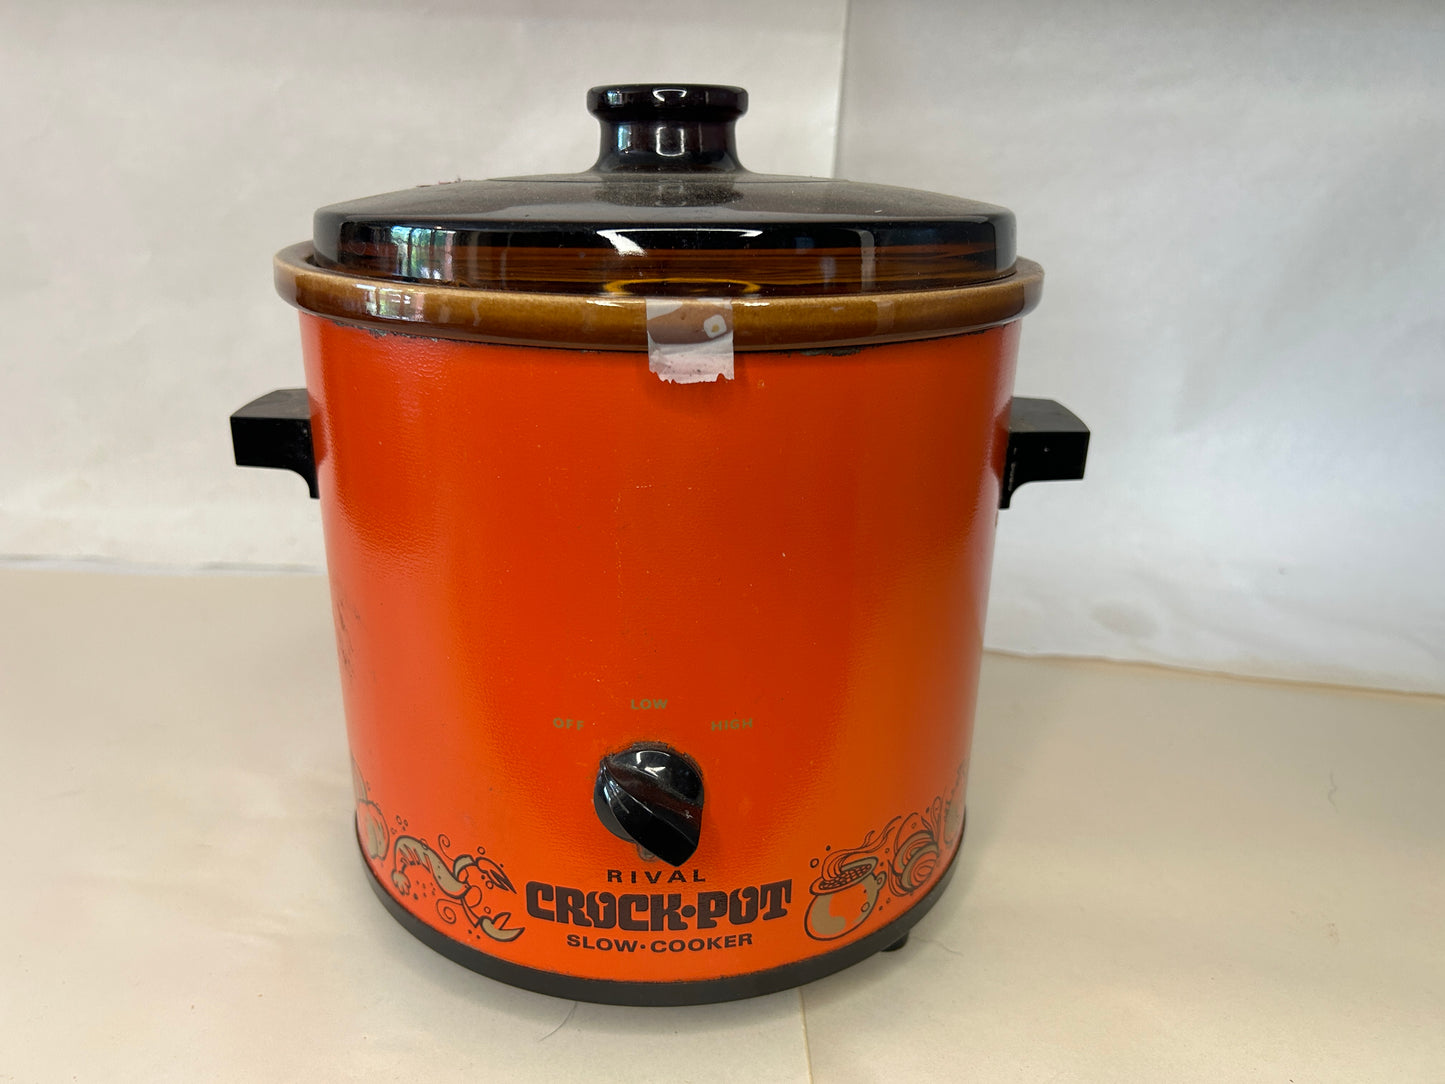 Vintage Rival Crock Pot Slow Cooker Flame Orange Model 3100/2 3.5 Quart Tested